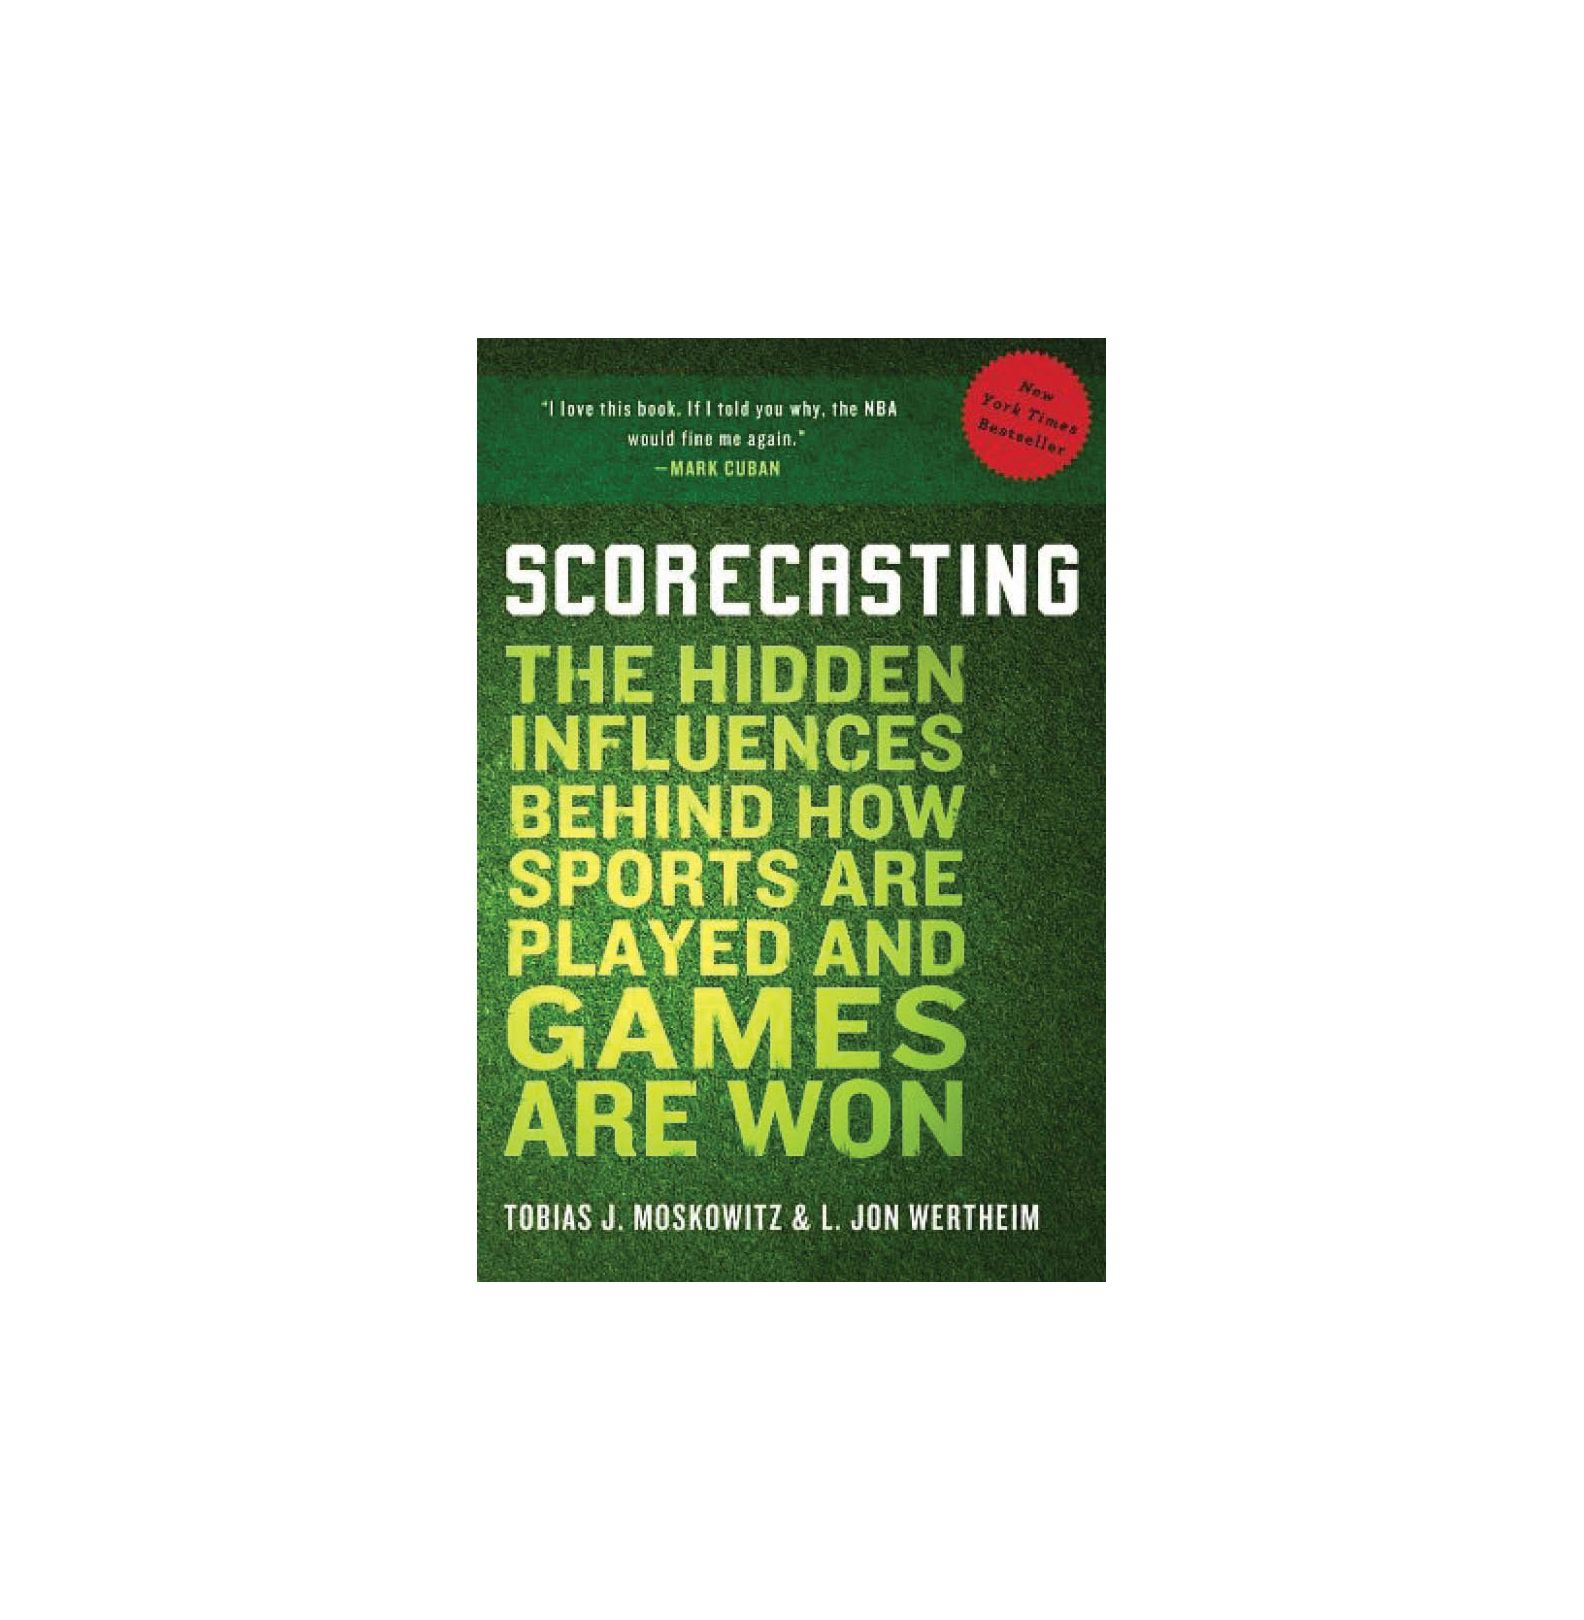 Scorecasting: Die verborgenen Einflüsse hinter der Art und Weise, wie Sport gespielt und Spiele gewonnen werden, von Tobias Moskowitz & L. Jon Wertheim